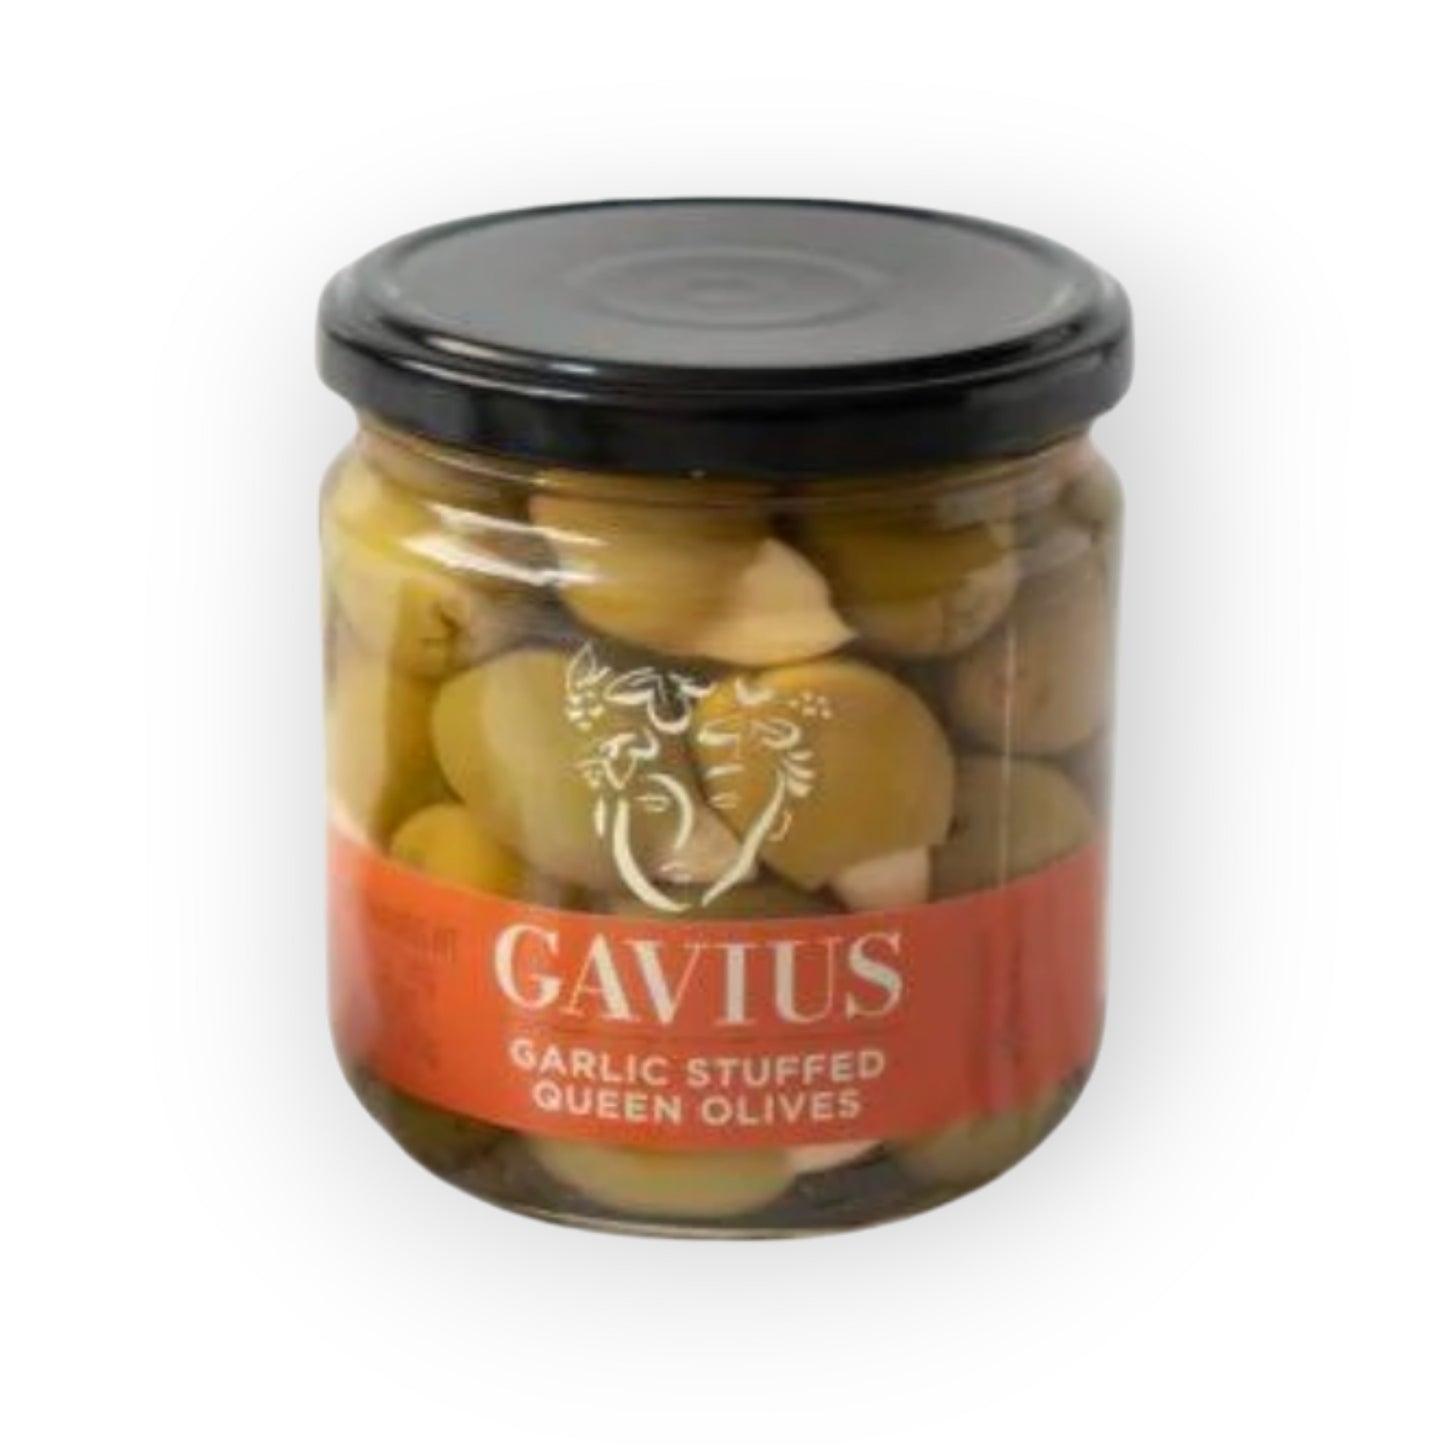 Gavius Garlic Stuffed Queen Olives